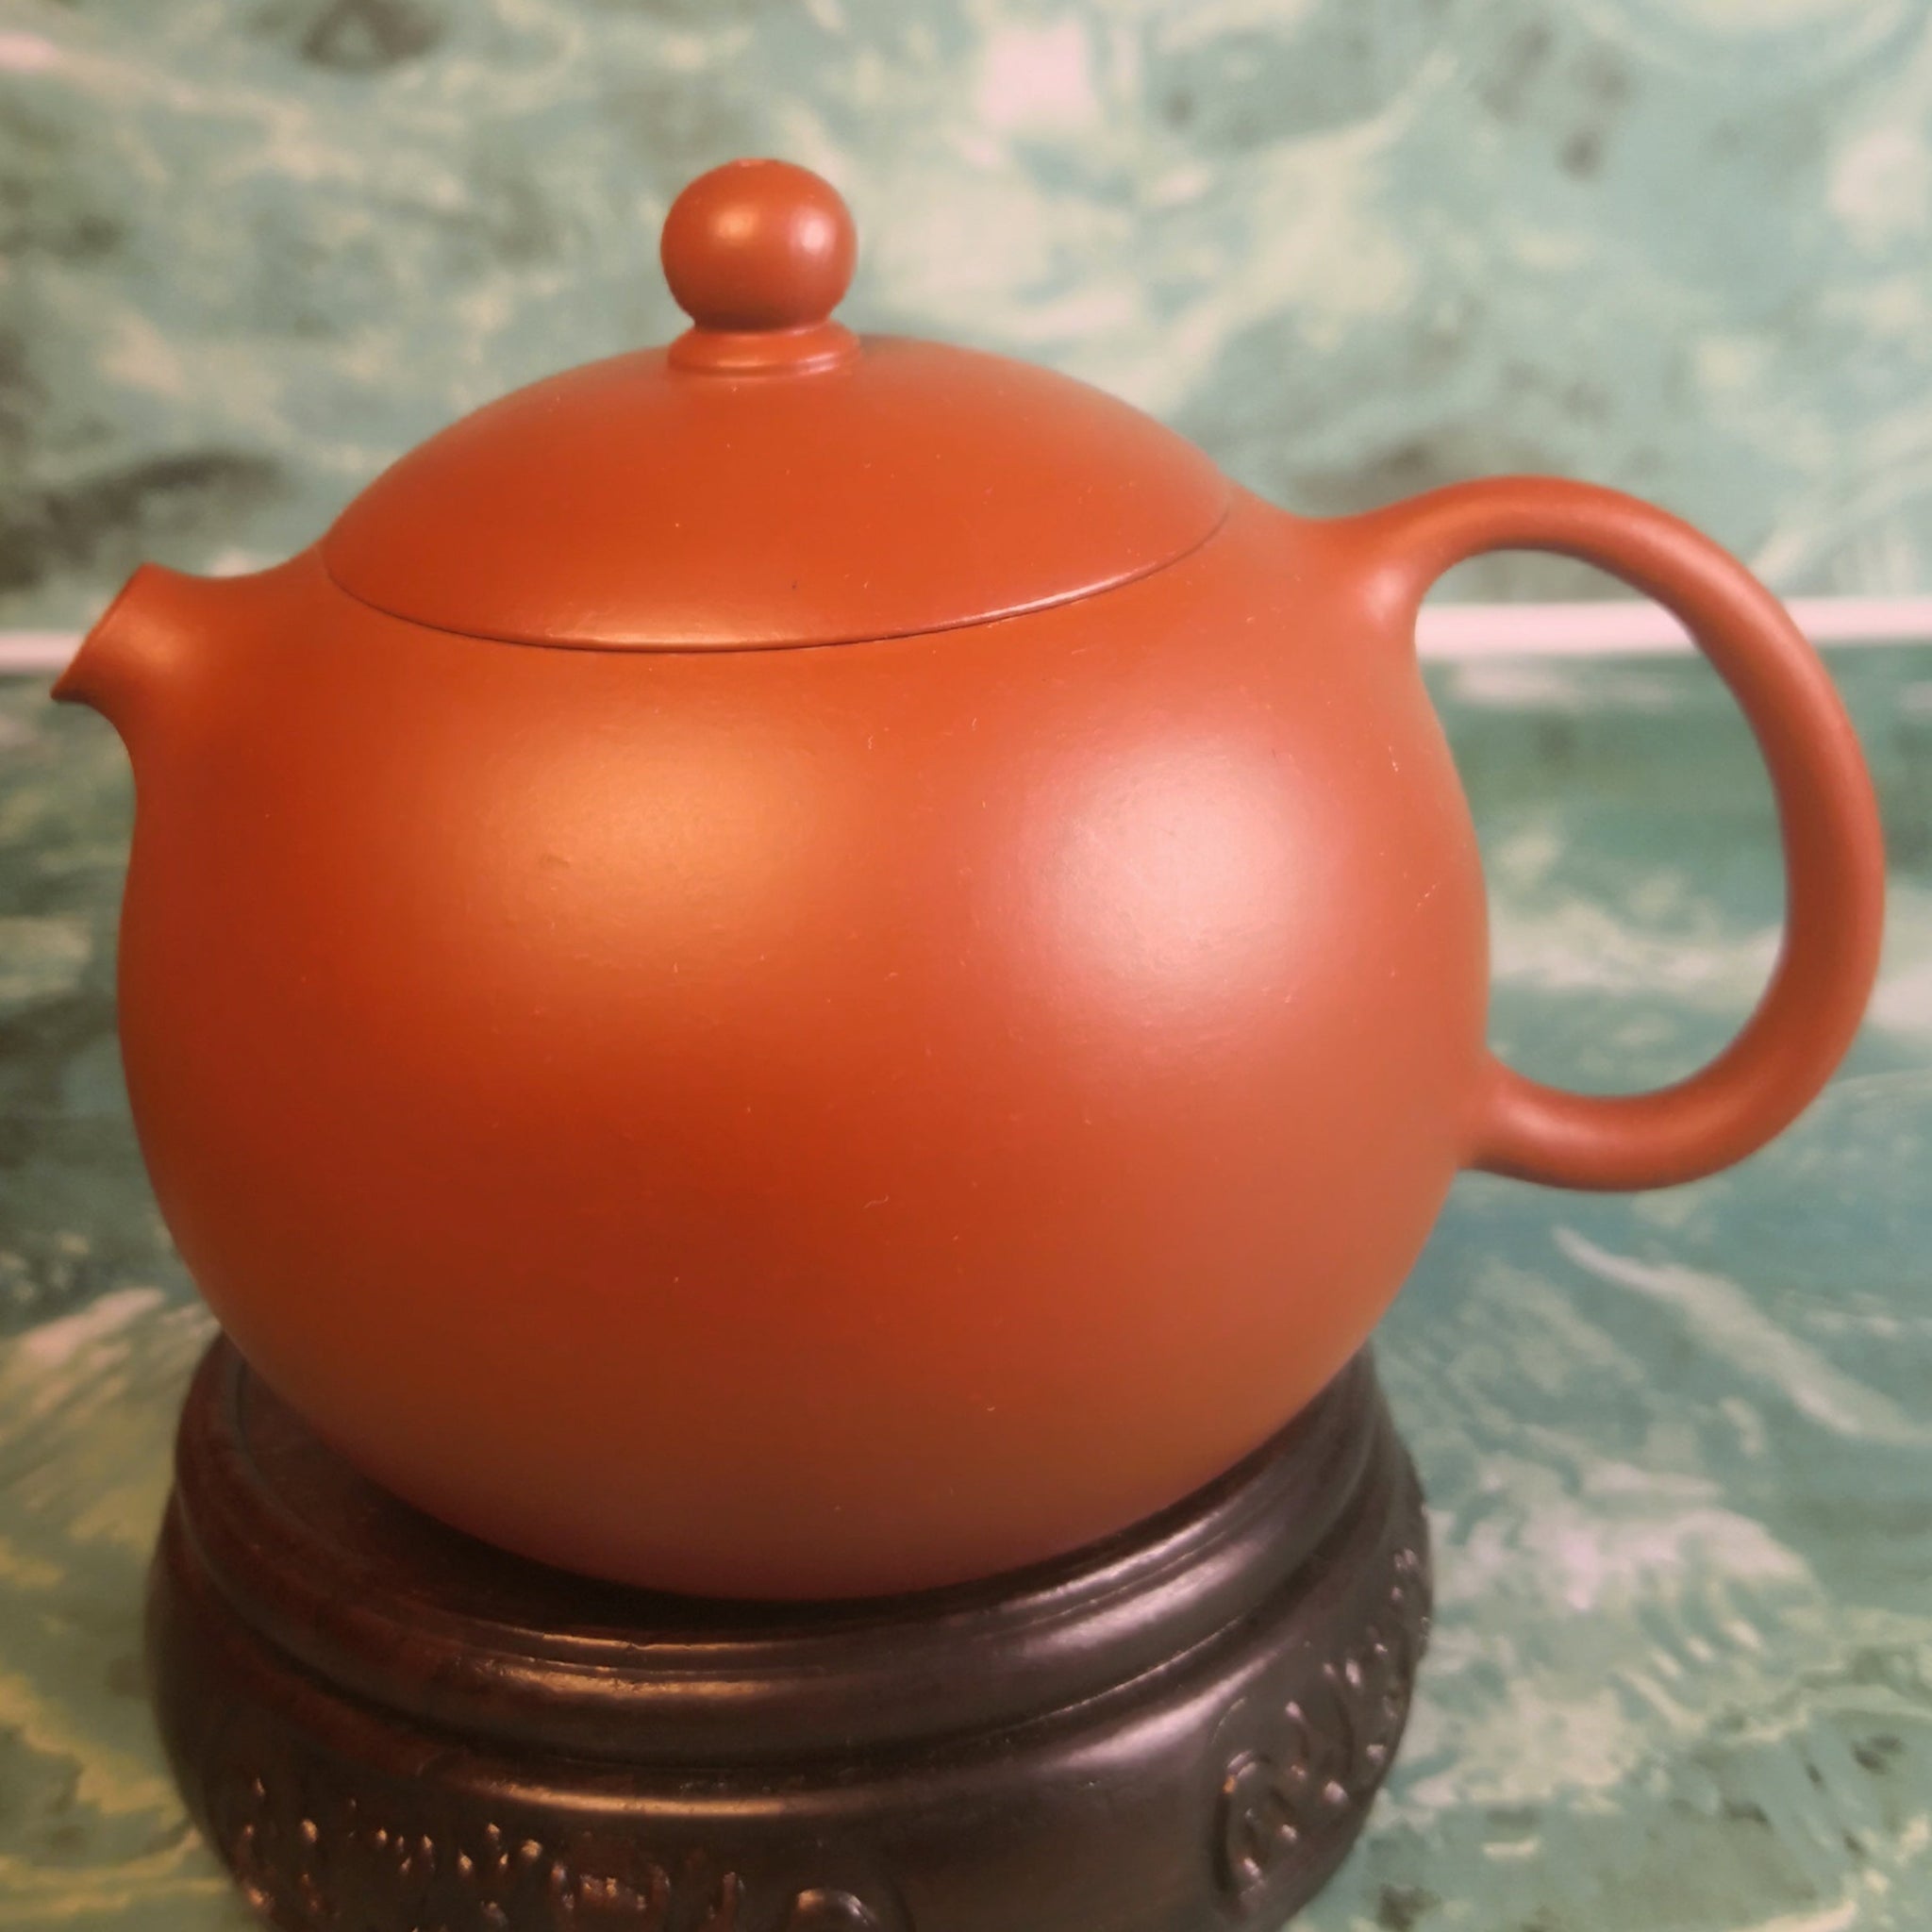 Zisha teapot Xi Shi, handmade by Skillful artist 实力派匠人黄俊文 HUANG Jun-Wen 朱泥 ZHU NI “西施”